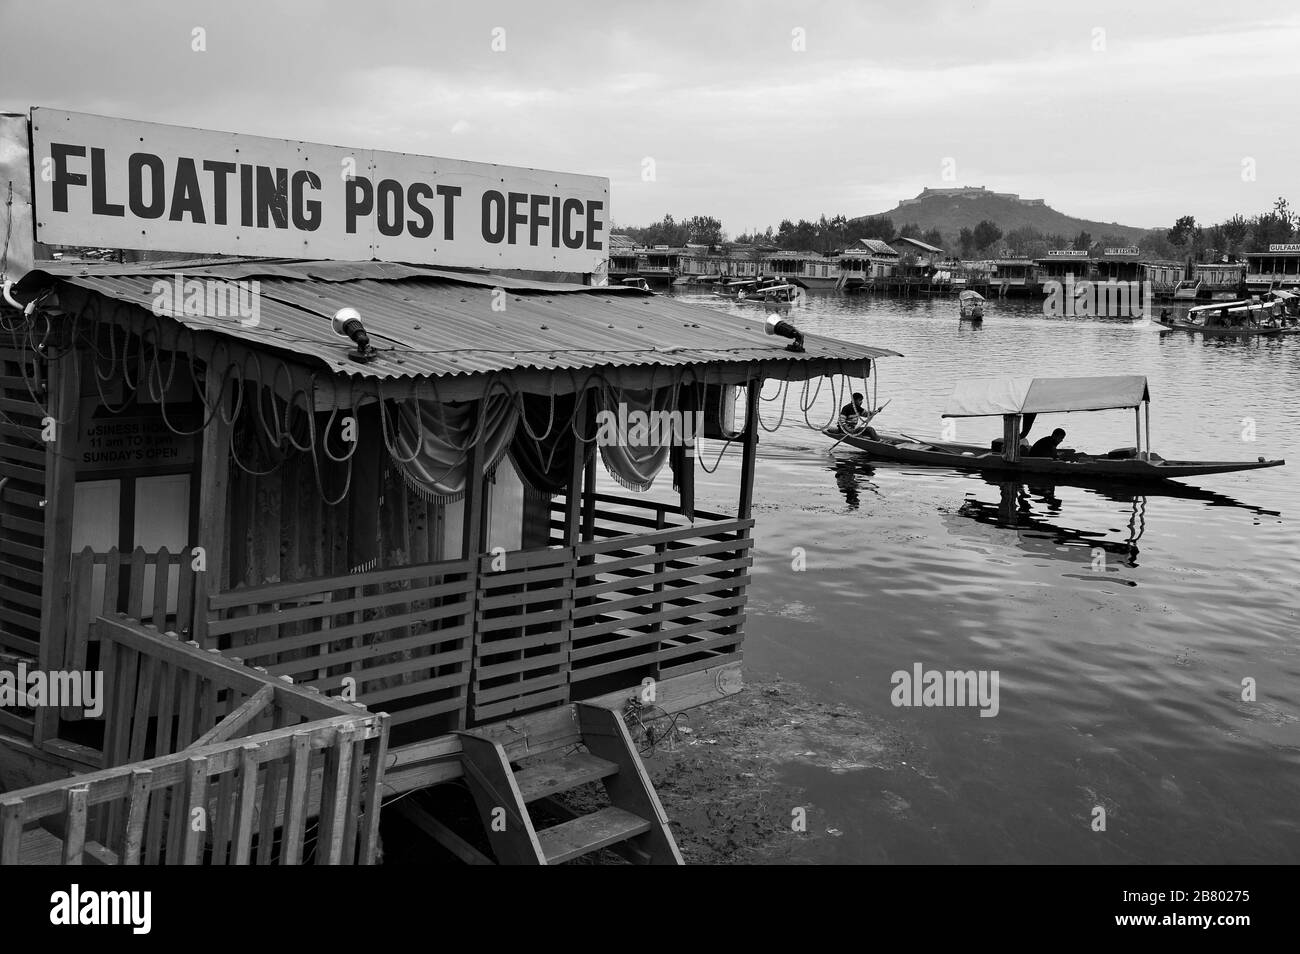 Floating Post Office, Nehru Park, 190001, Srinagar, Kashmir, Jammu and Kashmir, India, Asia Stock Photo